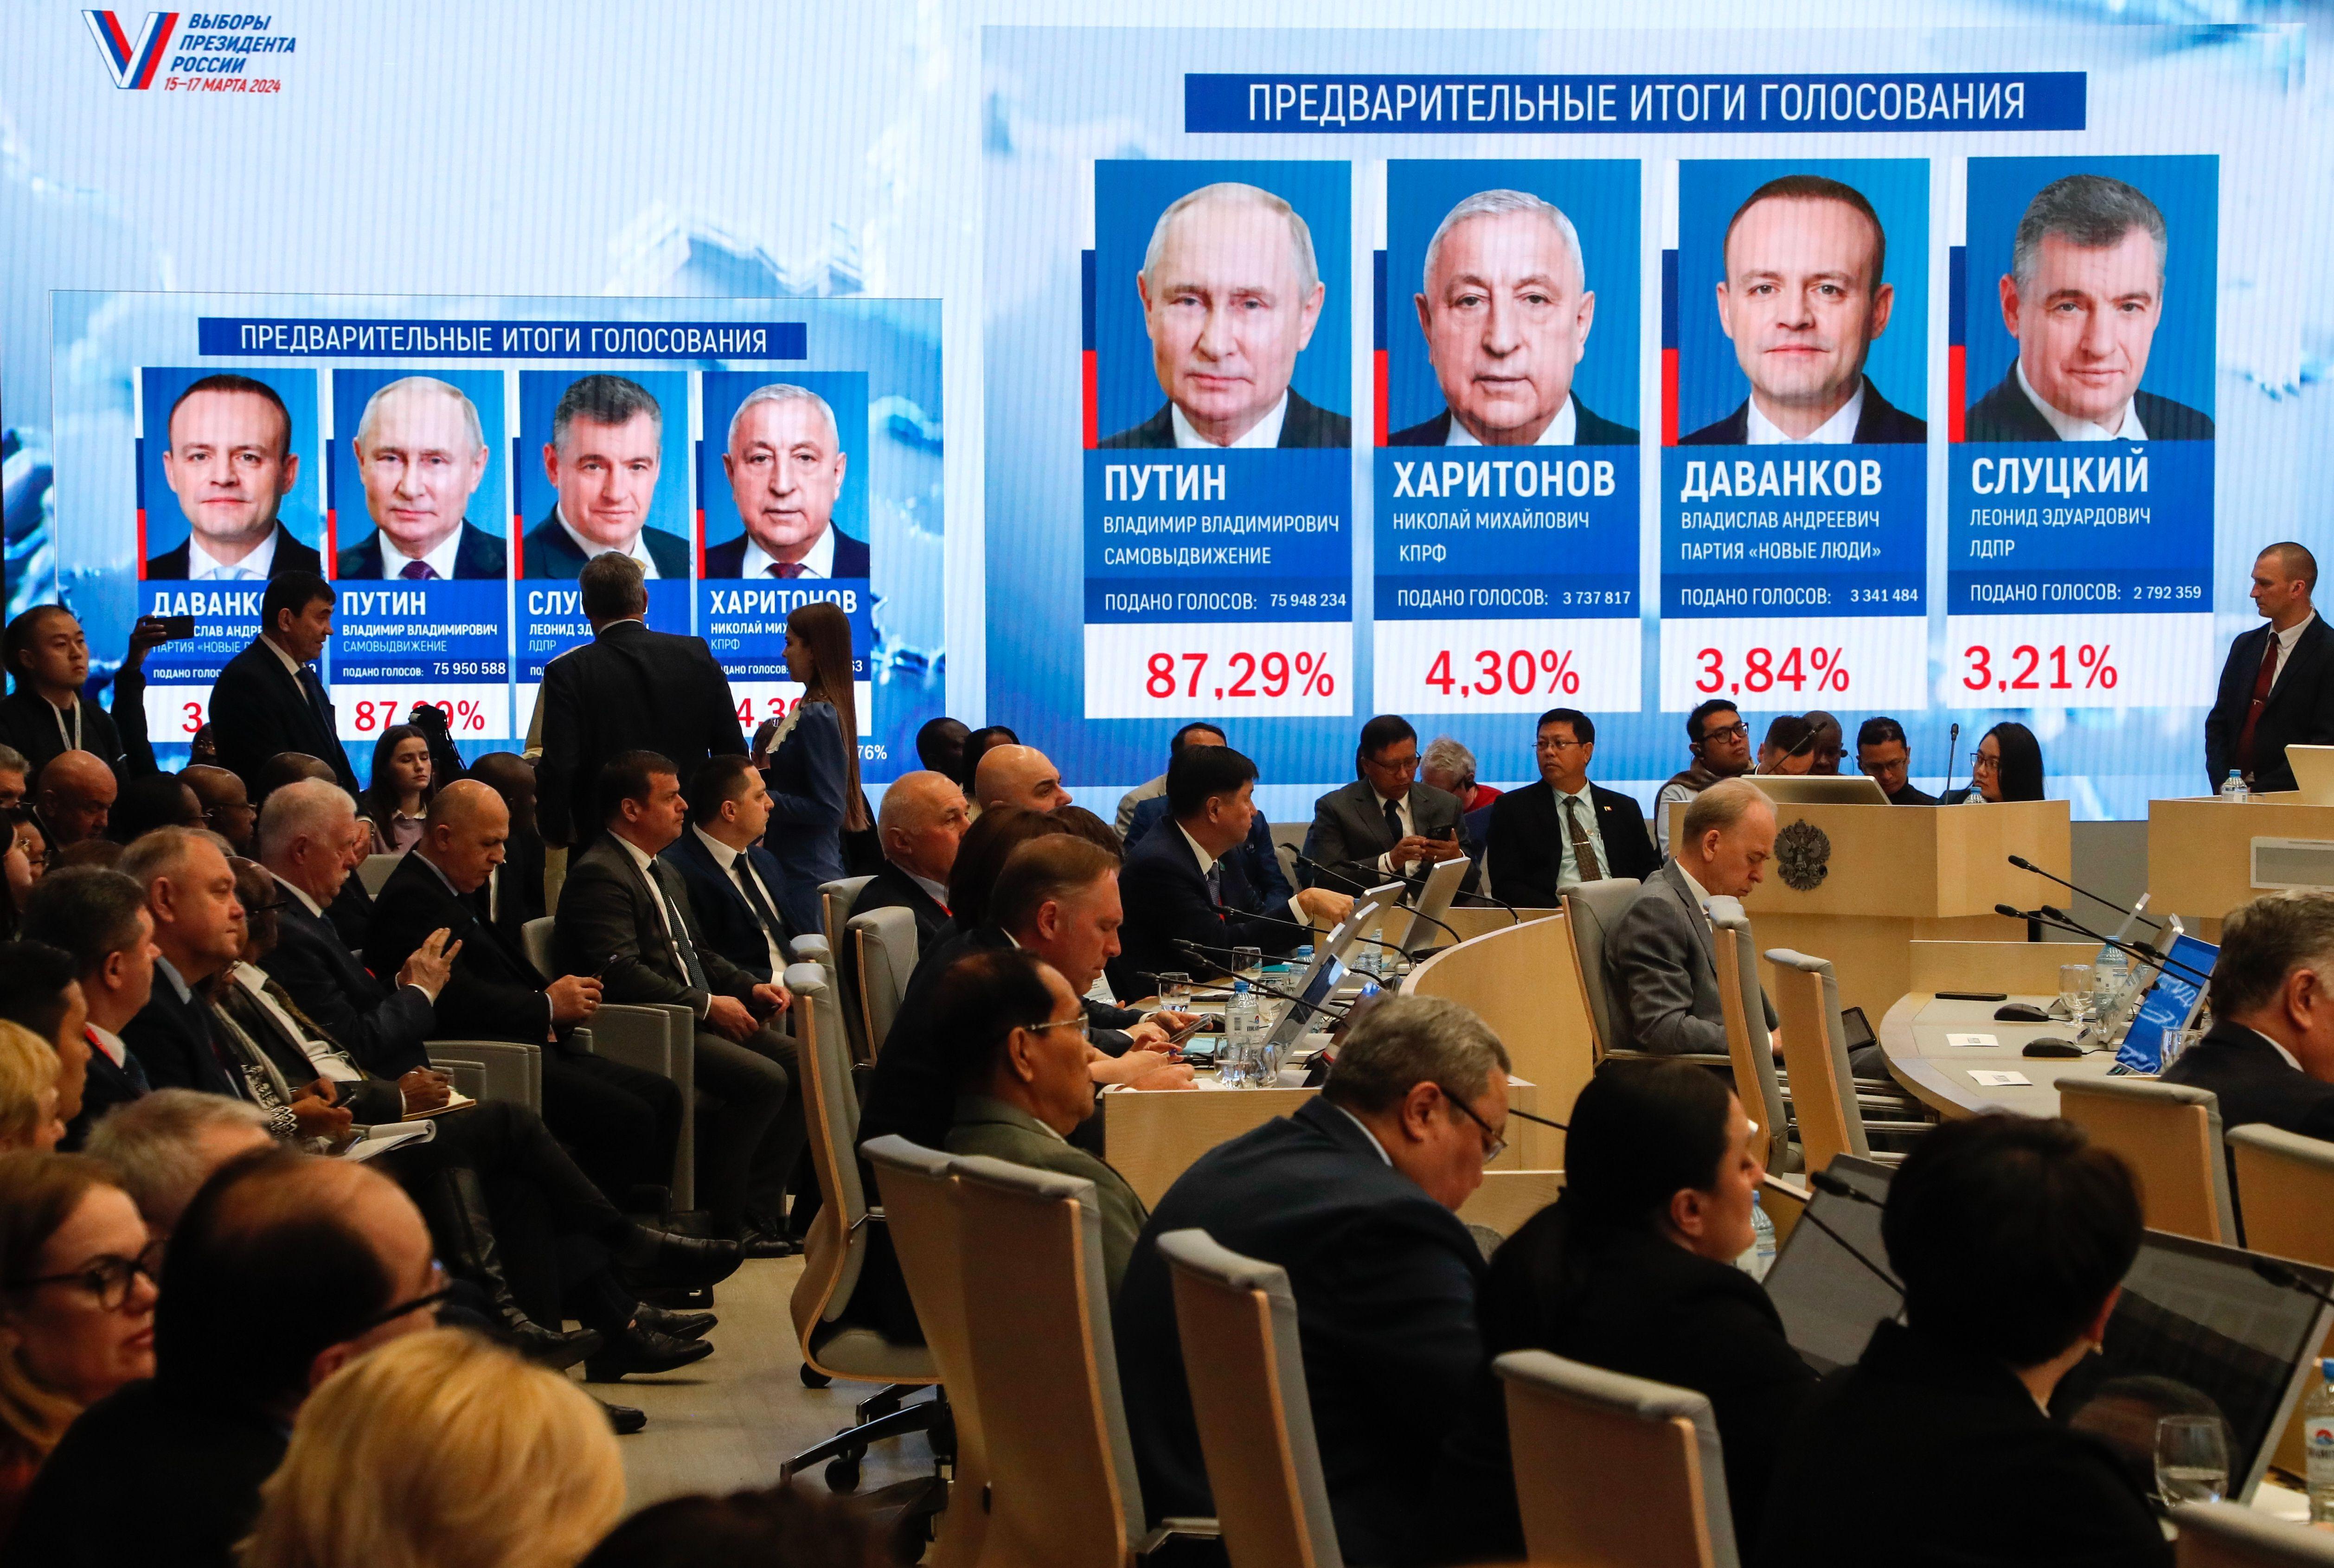 صورة تظهر المتنافسين الأربعة في الانتخابات الروسية داخل قاعة الانتخابات المركزية.